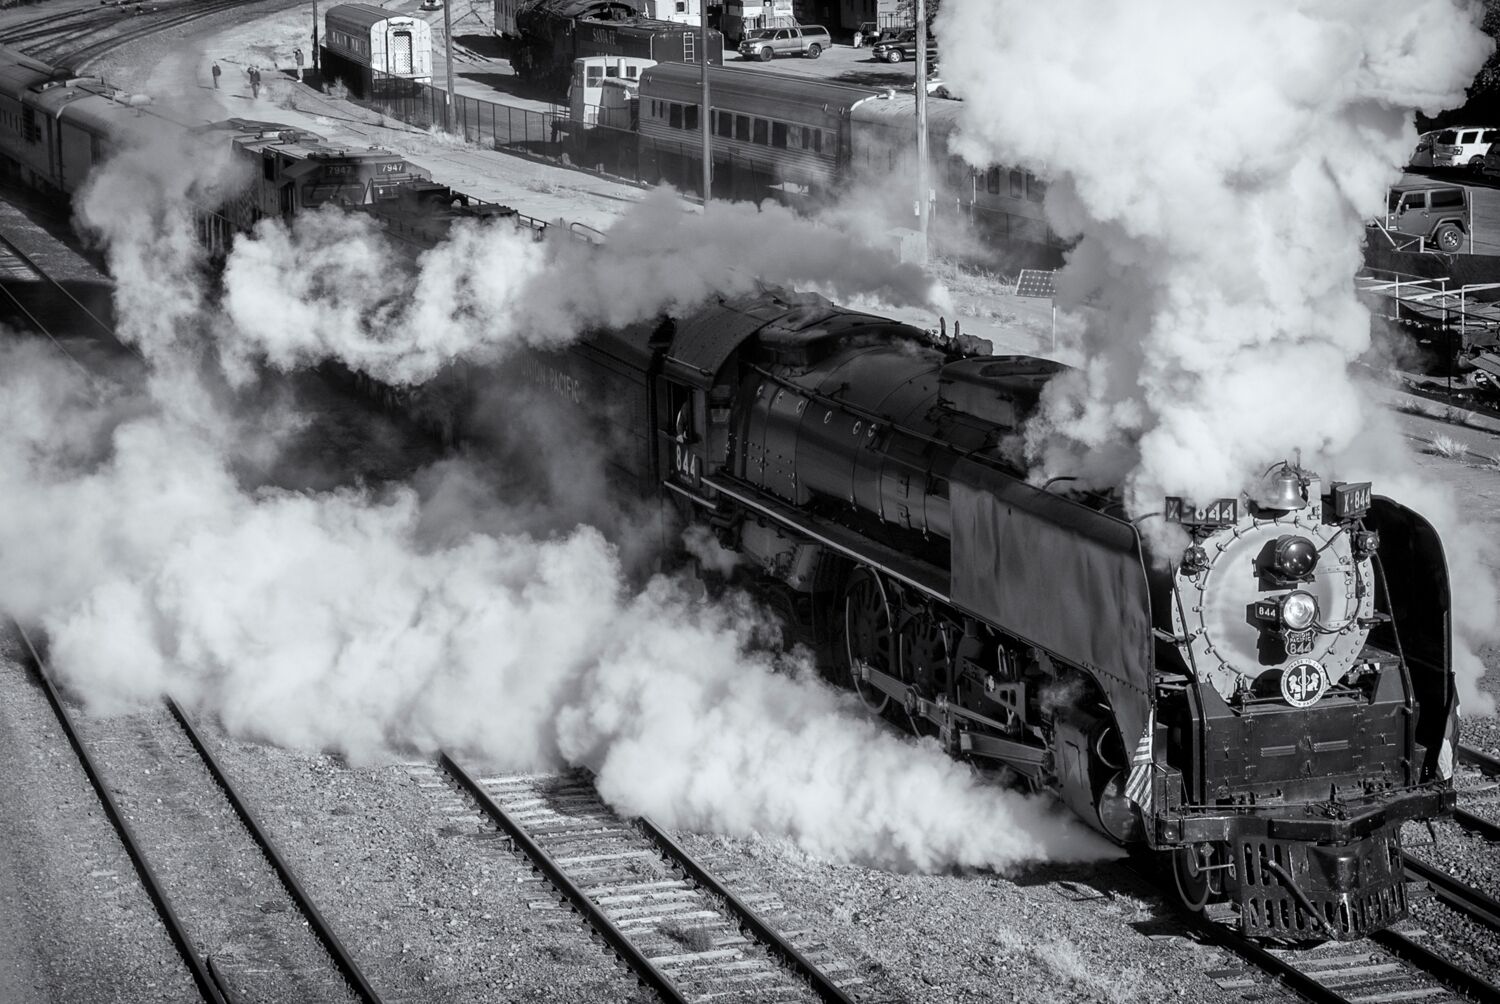 A wild start leaving Pueblo Colorado. Union Pacific 844 steam locomotive.